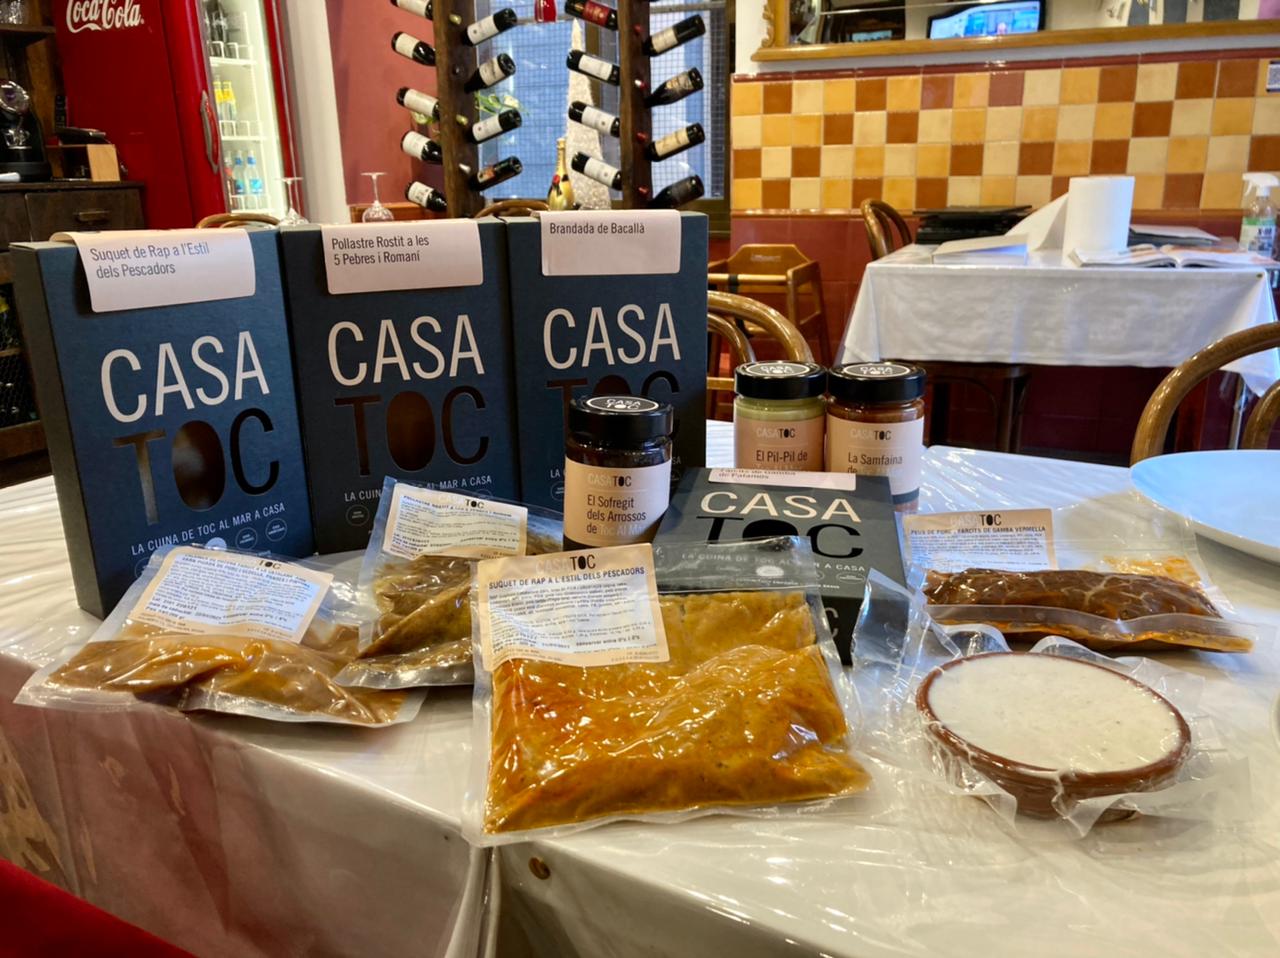 Avui hem fet una degustació de platets de Casa Toc a l'Arrosseria Andorra - Casa Toc propietat i disseny del restaurant Toc al Mar de Begur hem posat en marxa Casa Toc